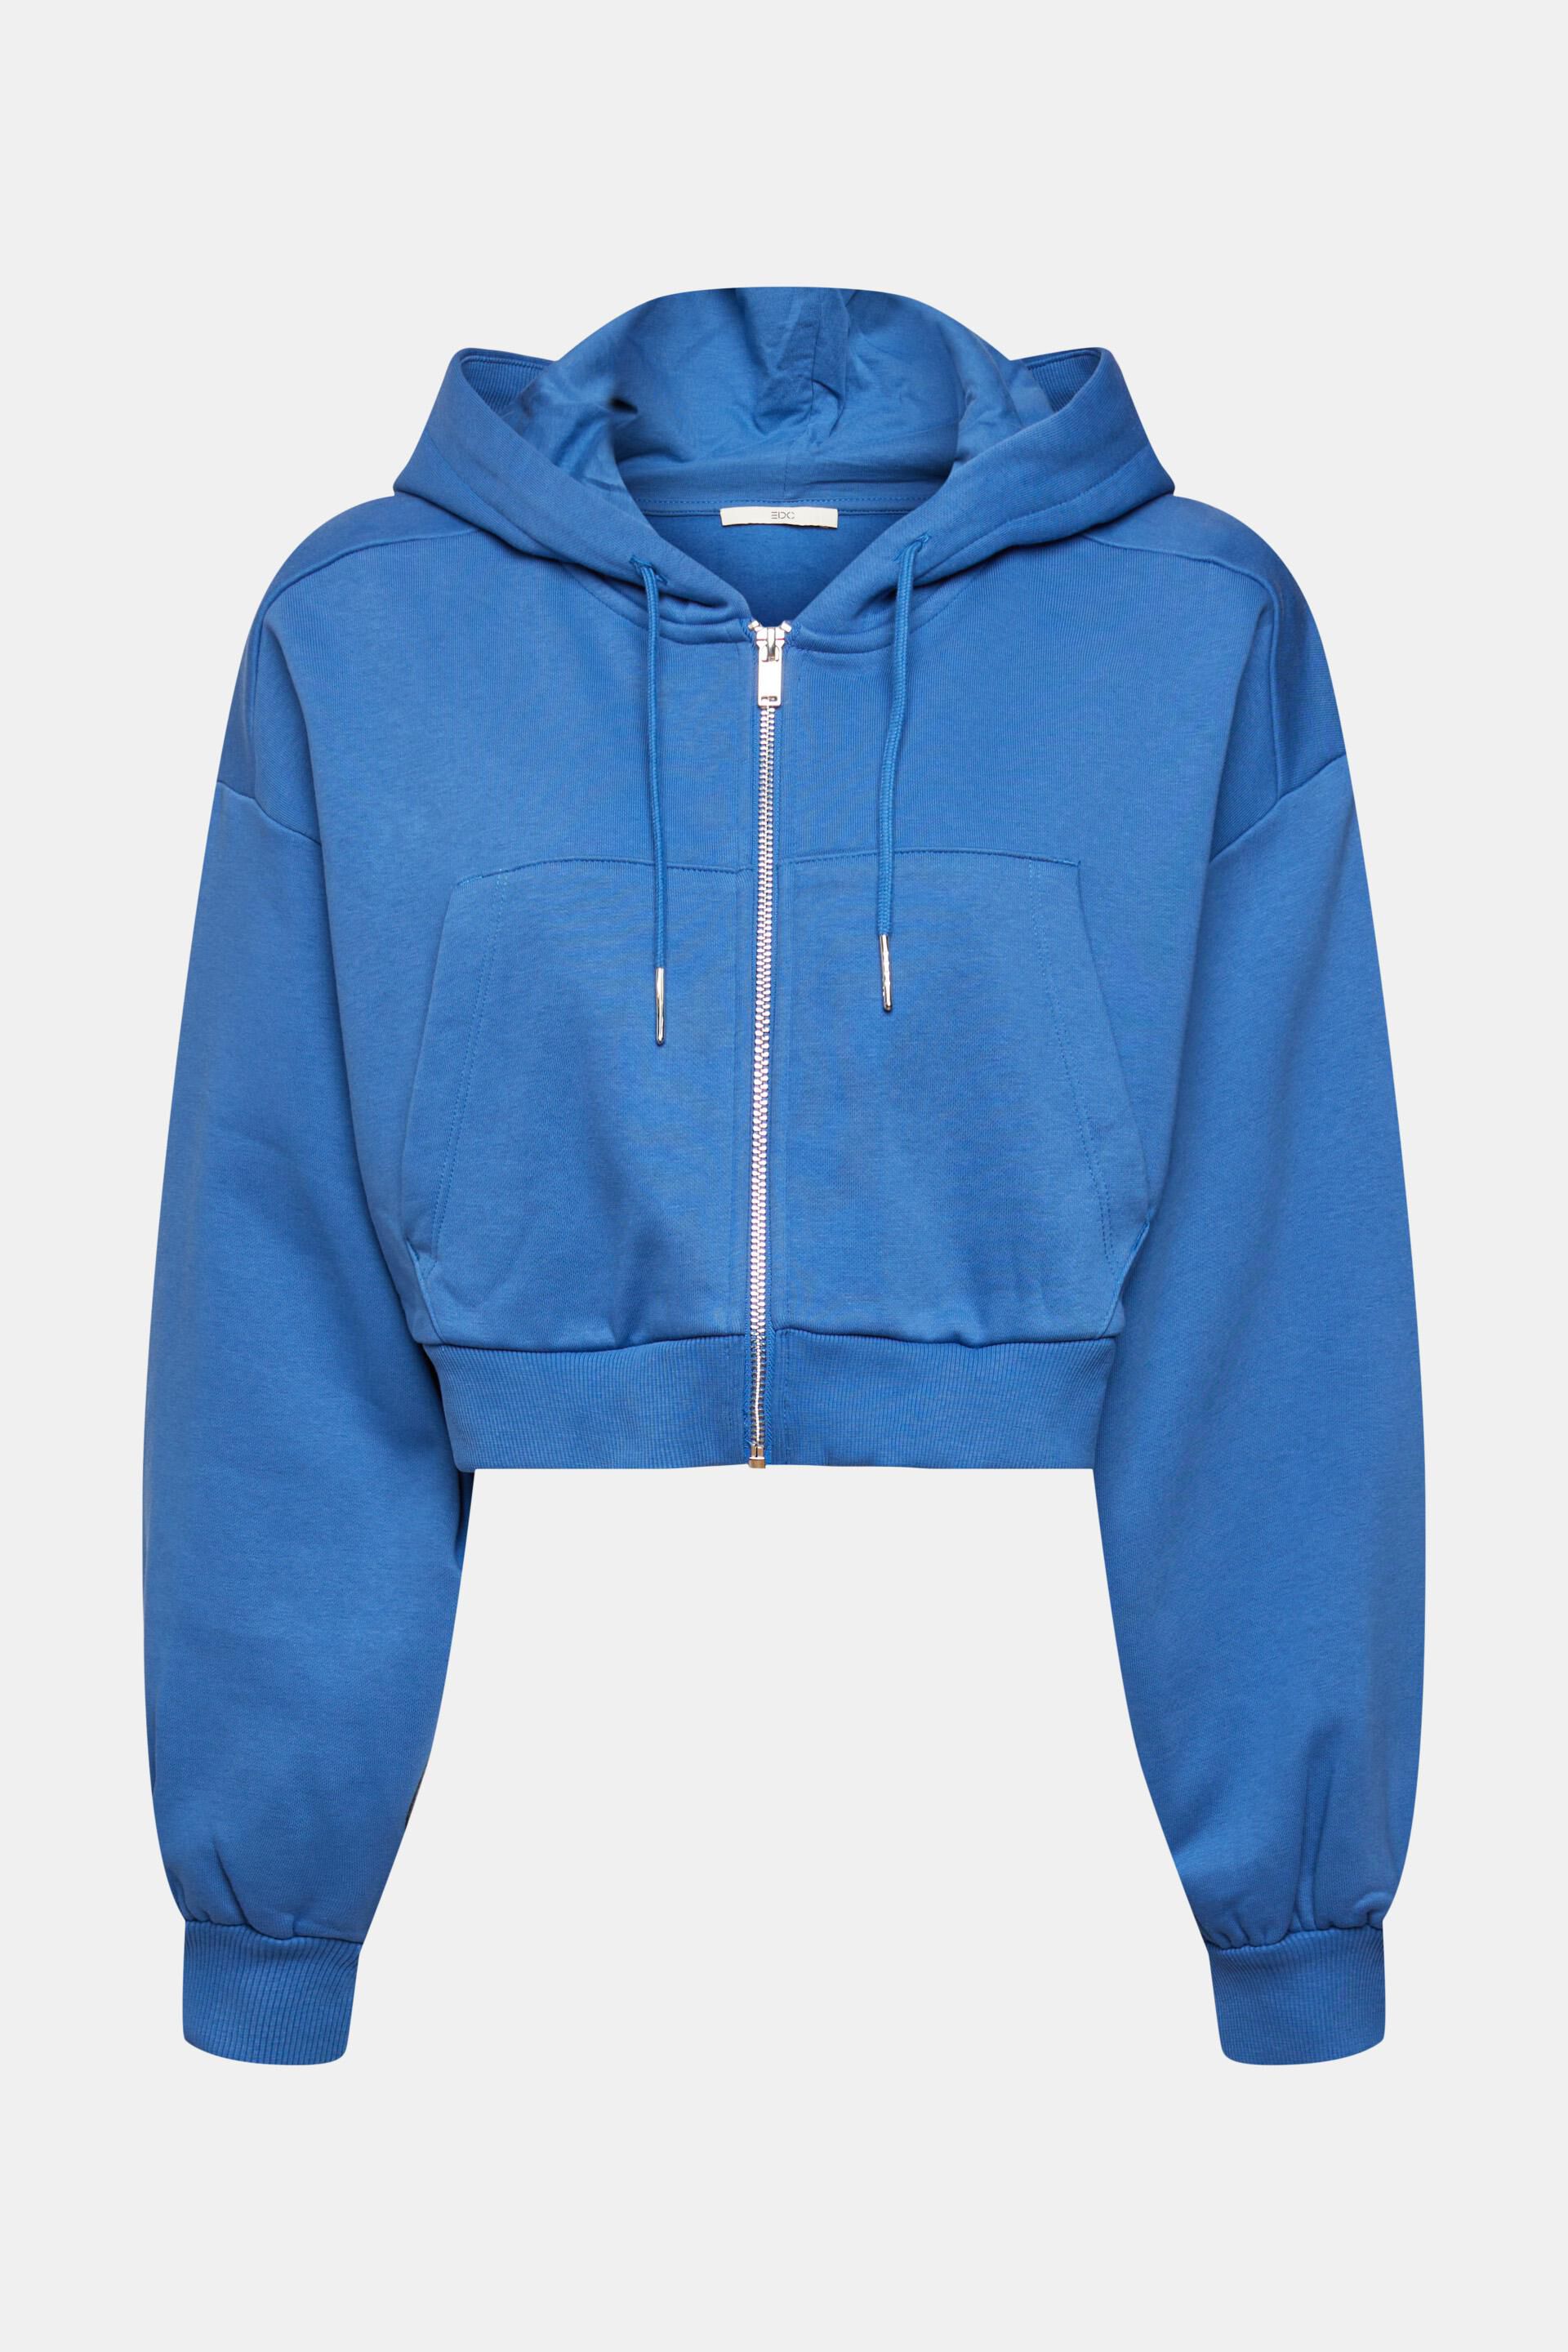 Blaue Jacke Damen Kleidung Hoodies & Pullover Strickjacken Esprit Strickjacken 